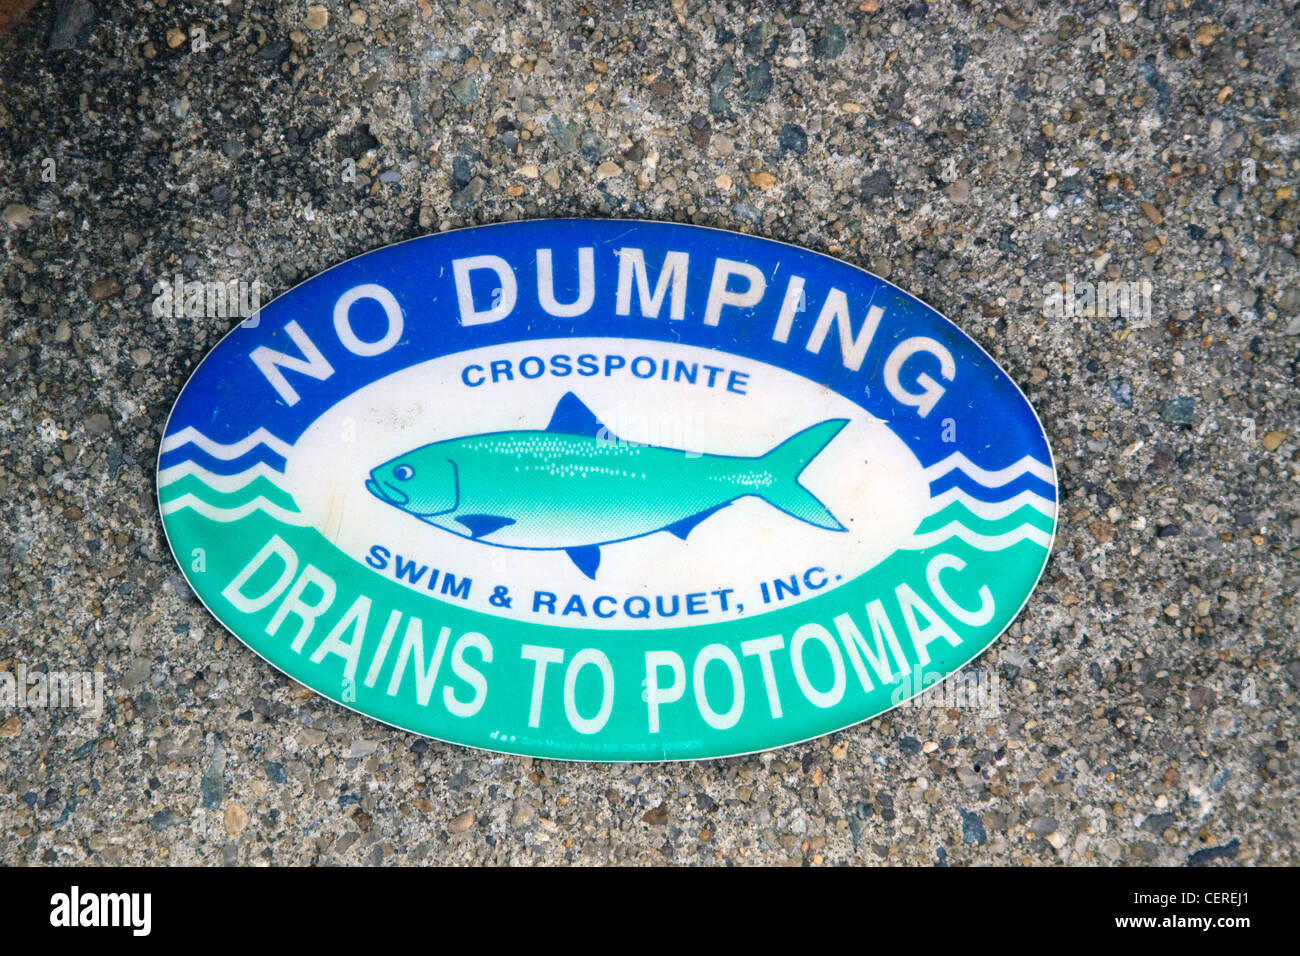 Le comté de Fairfax en Virginie aucun dumping n'est déchargée à Potomac signer au dessus d'un bassin de drainage des eaux pluviales de la structure d'entrée Banque D'Images